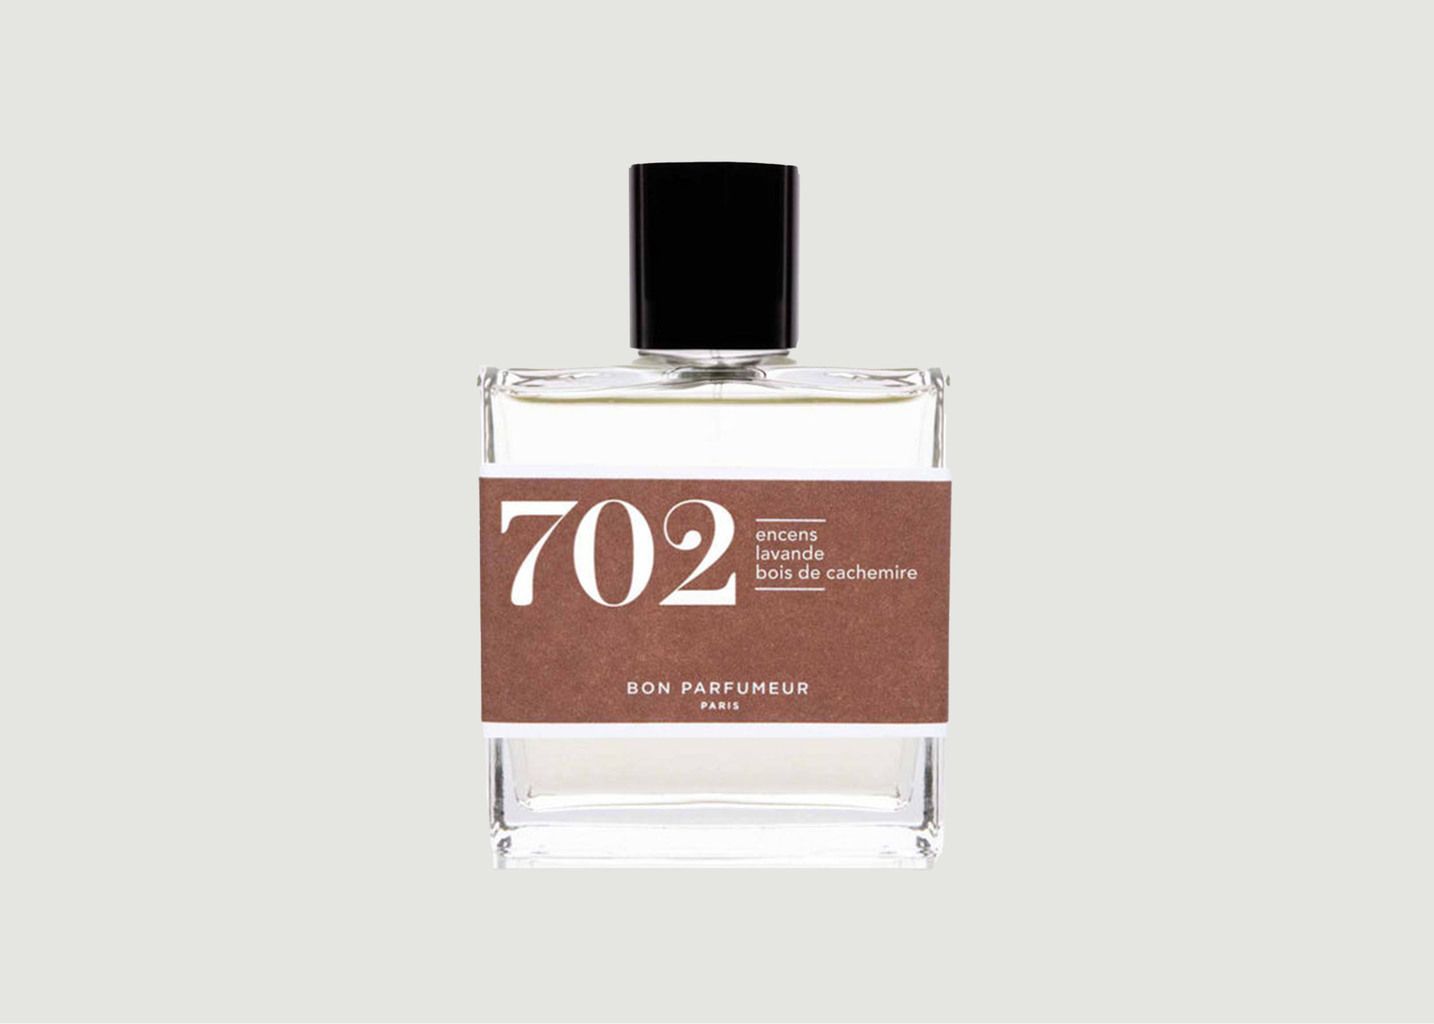 Eau de Parfum 702 : Encens, Lavande, Bois de cachemire - Bon Parfumeur